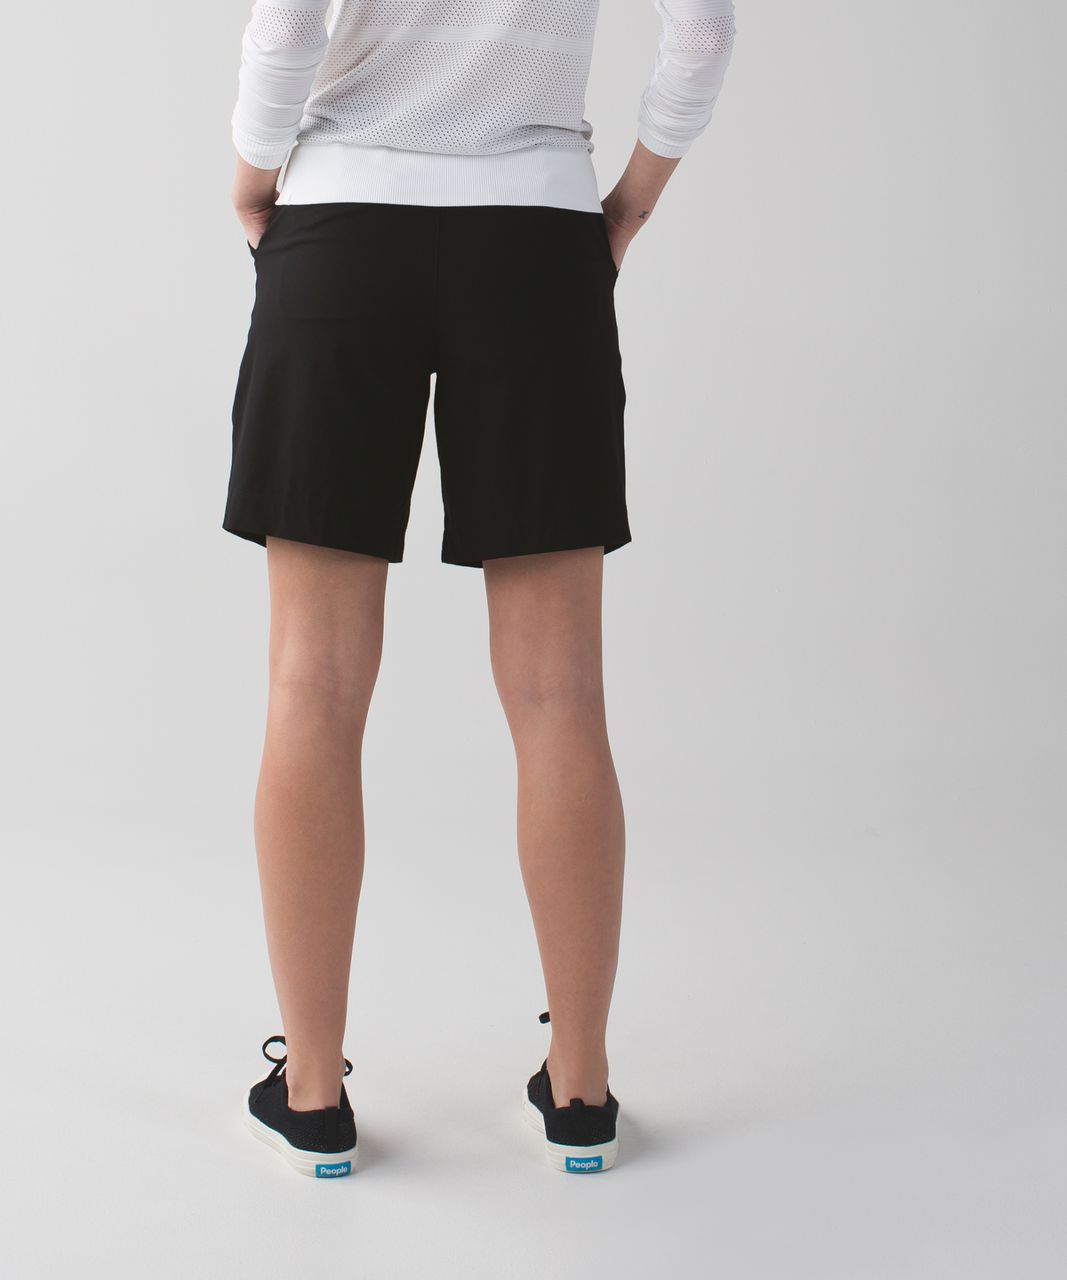 lululemon golf shorts